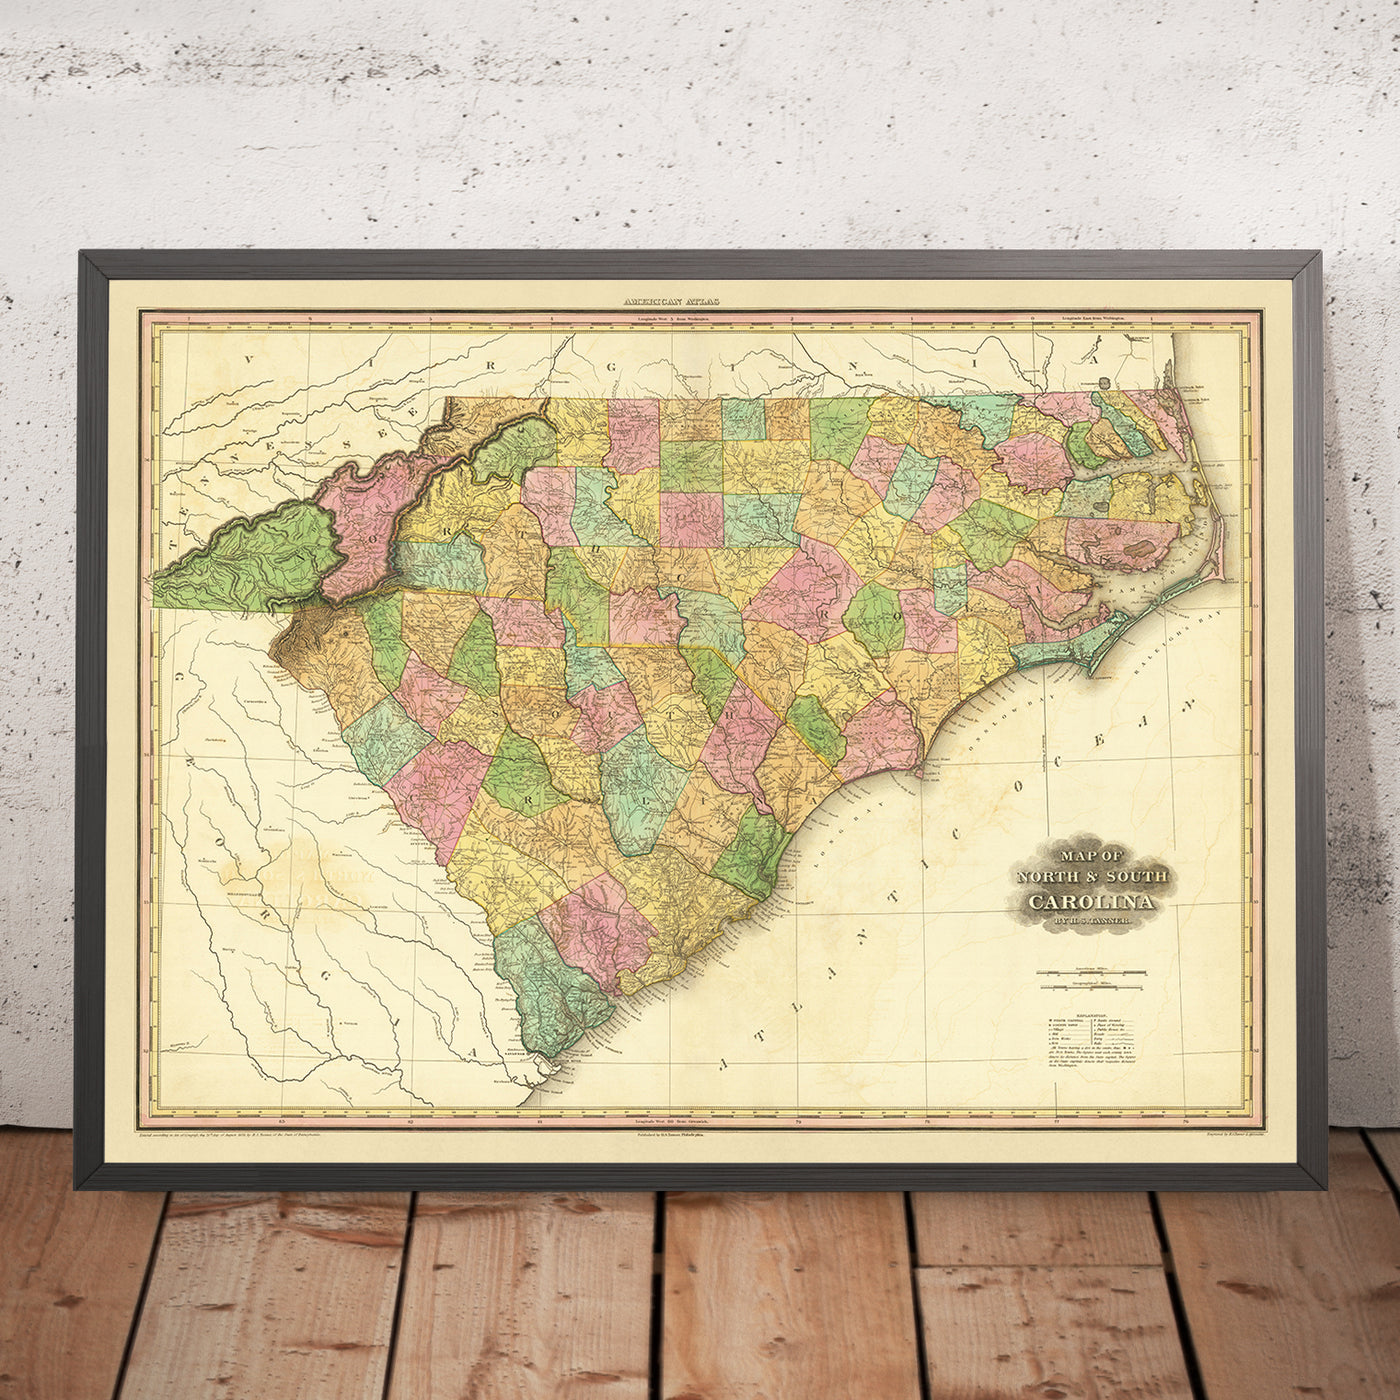 Mapa antiguo de Carolina del Norte y del Sur de Tanner, 1823: Charleston, Columbia, Charlotte, Raleigh y Wilmington